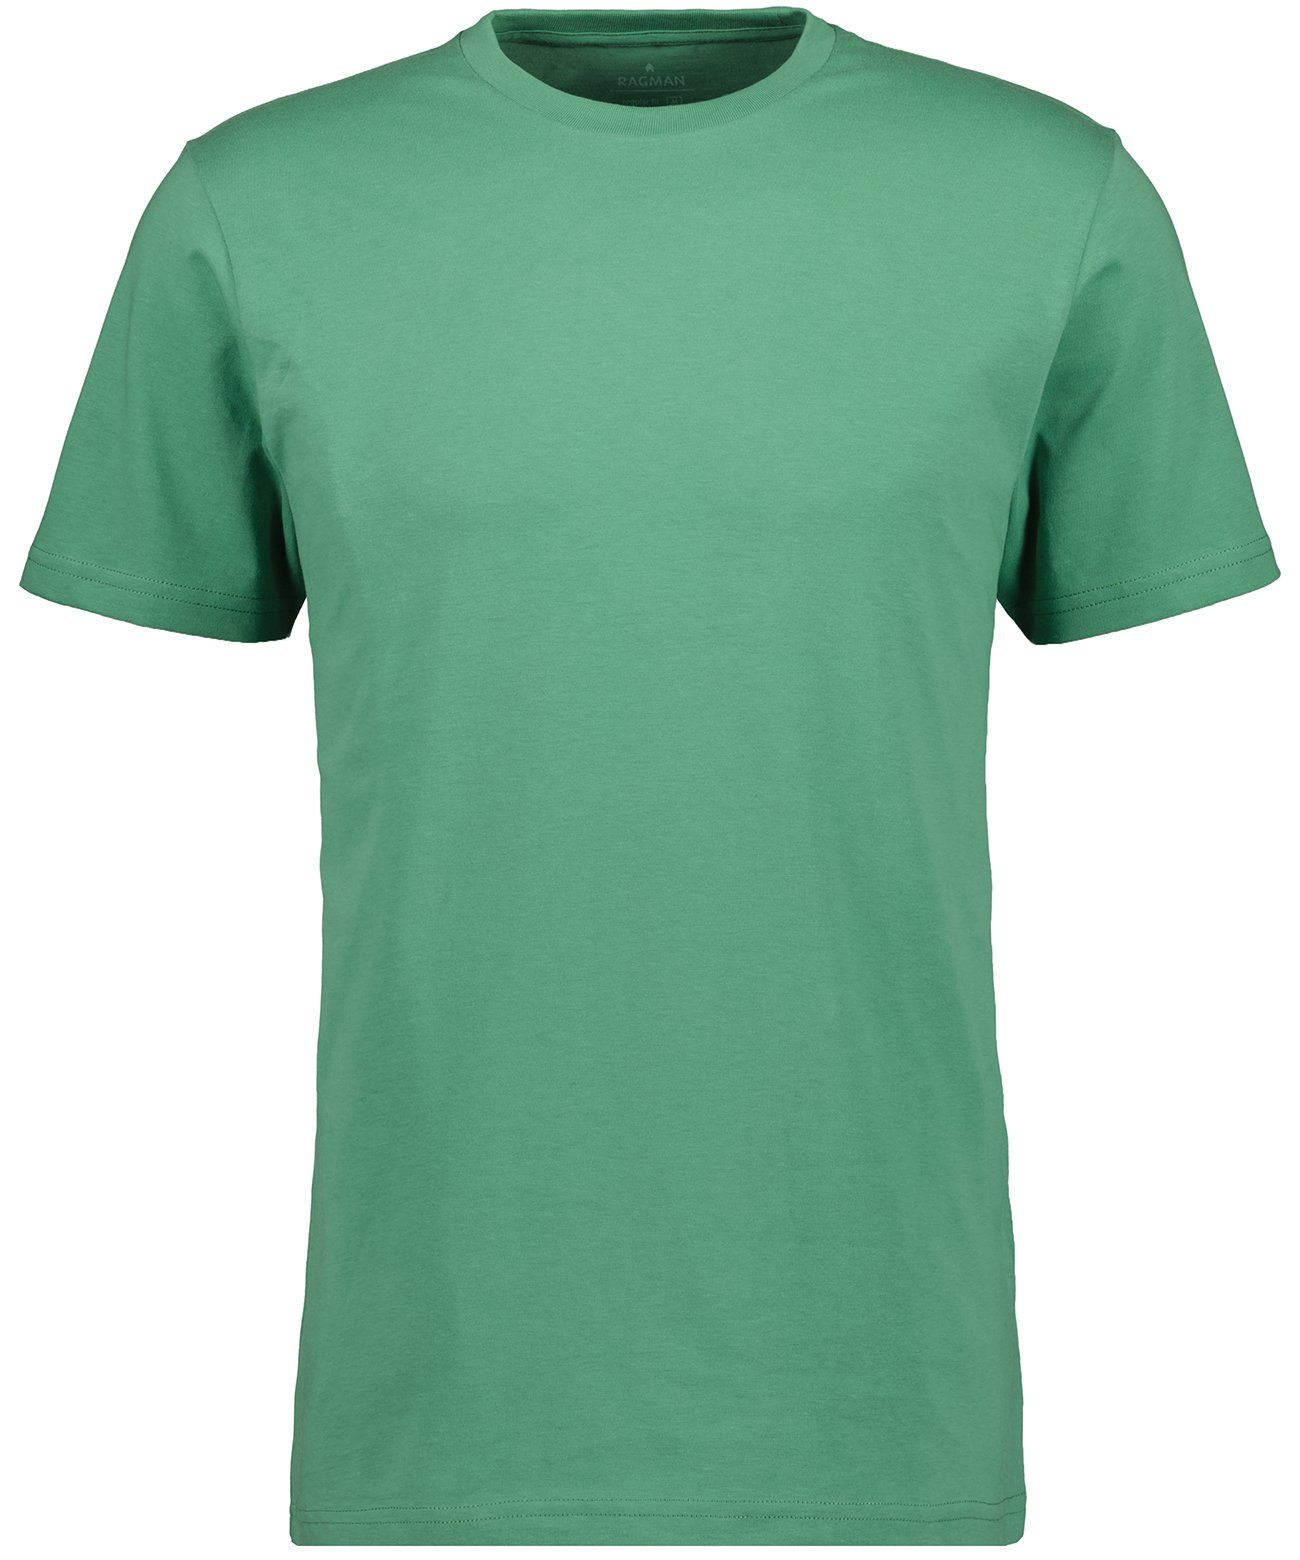 RAGMAN T-Shirt Grasgrün-370